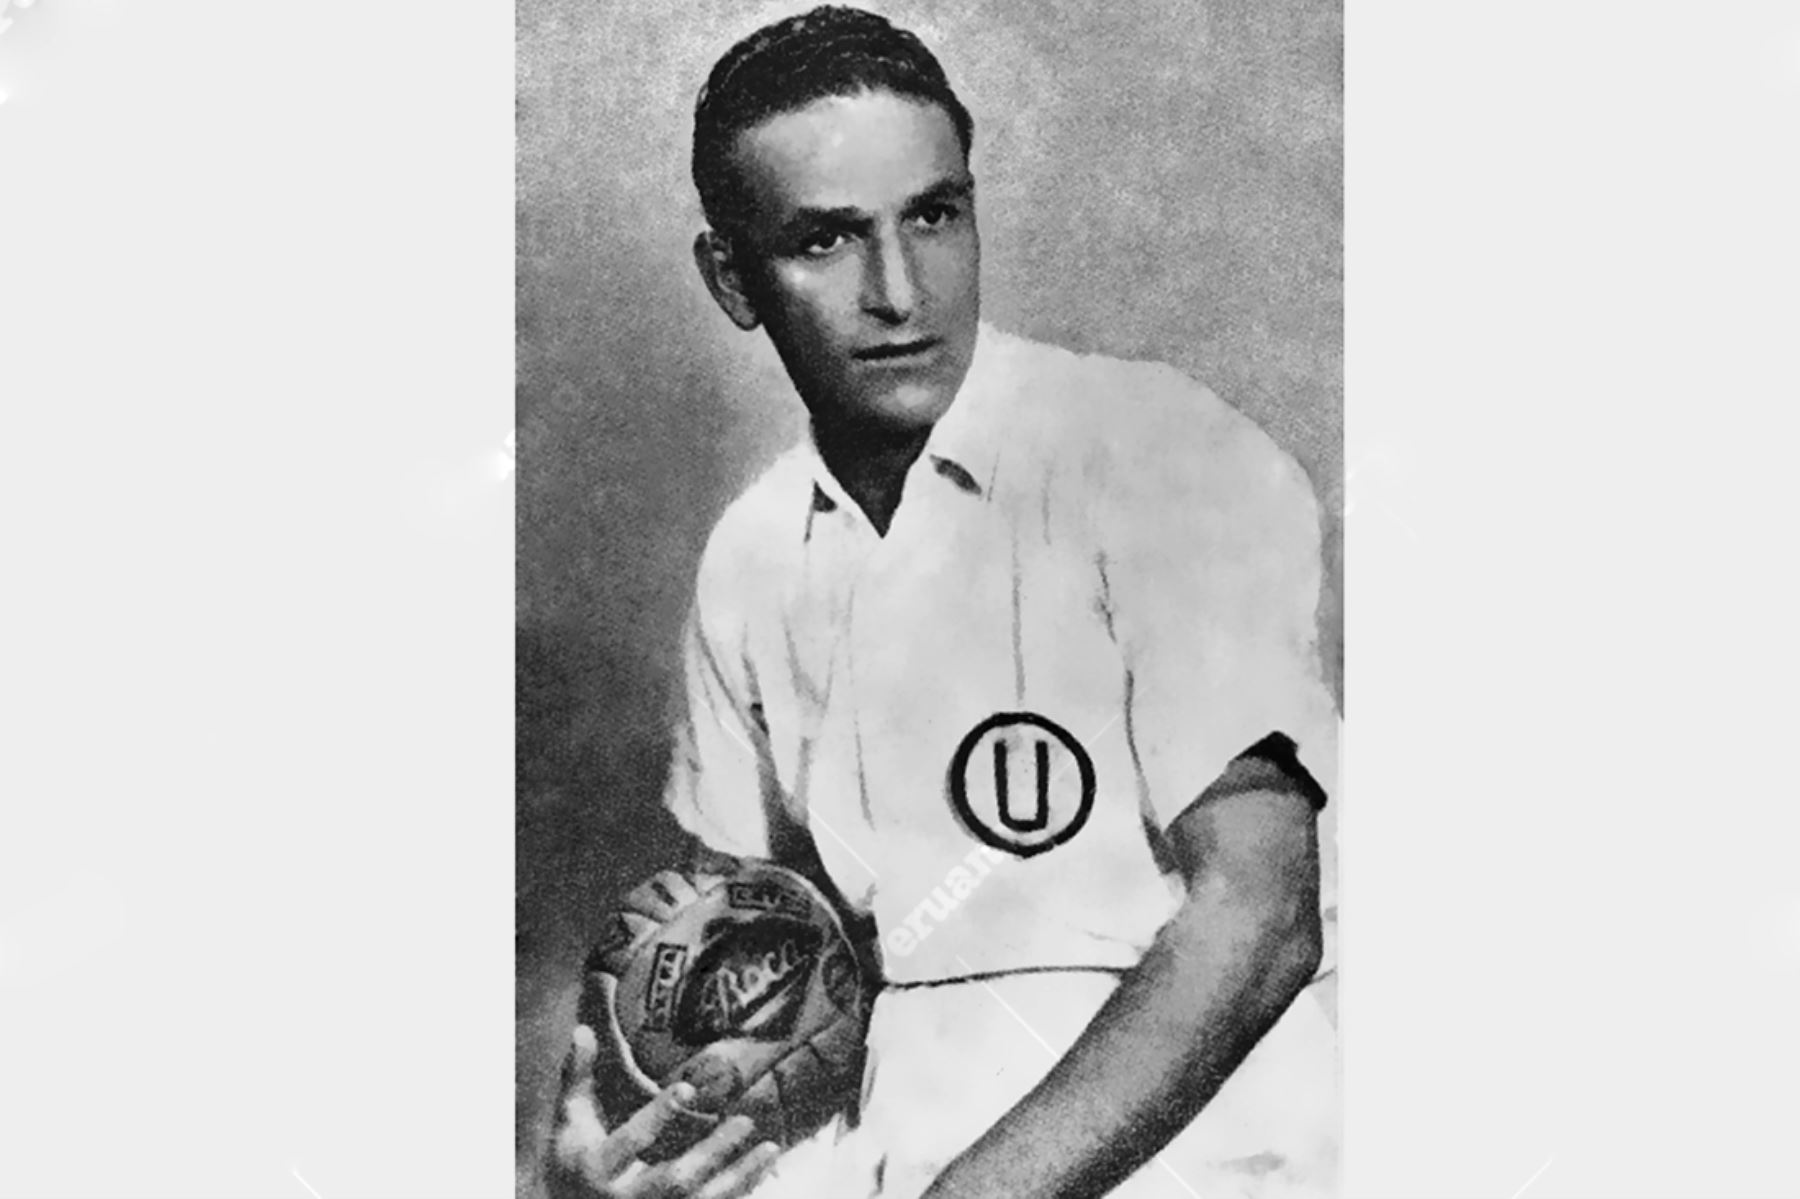 Lima - Década 1930 / Teodoro "Lolo" Fernández con la camiseta de Universitario de Deportes. 
Foto: Revista Universitario de Deportes - 1948.